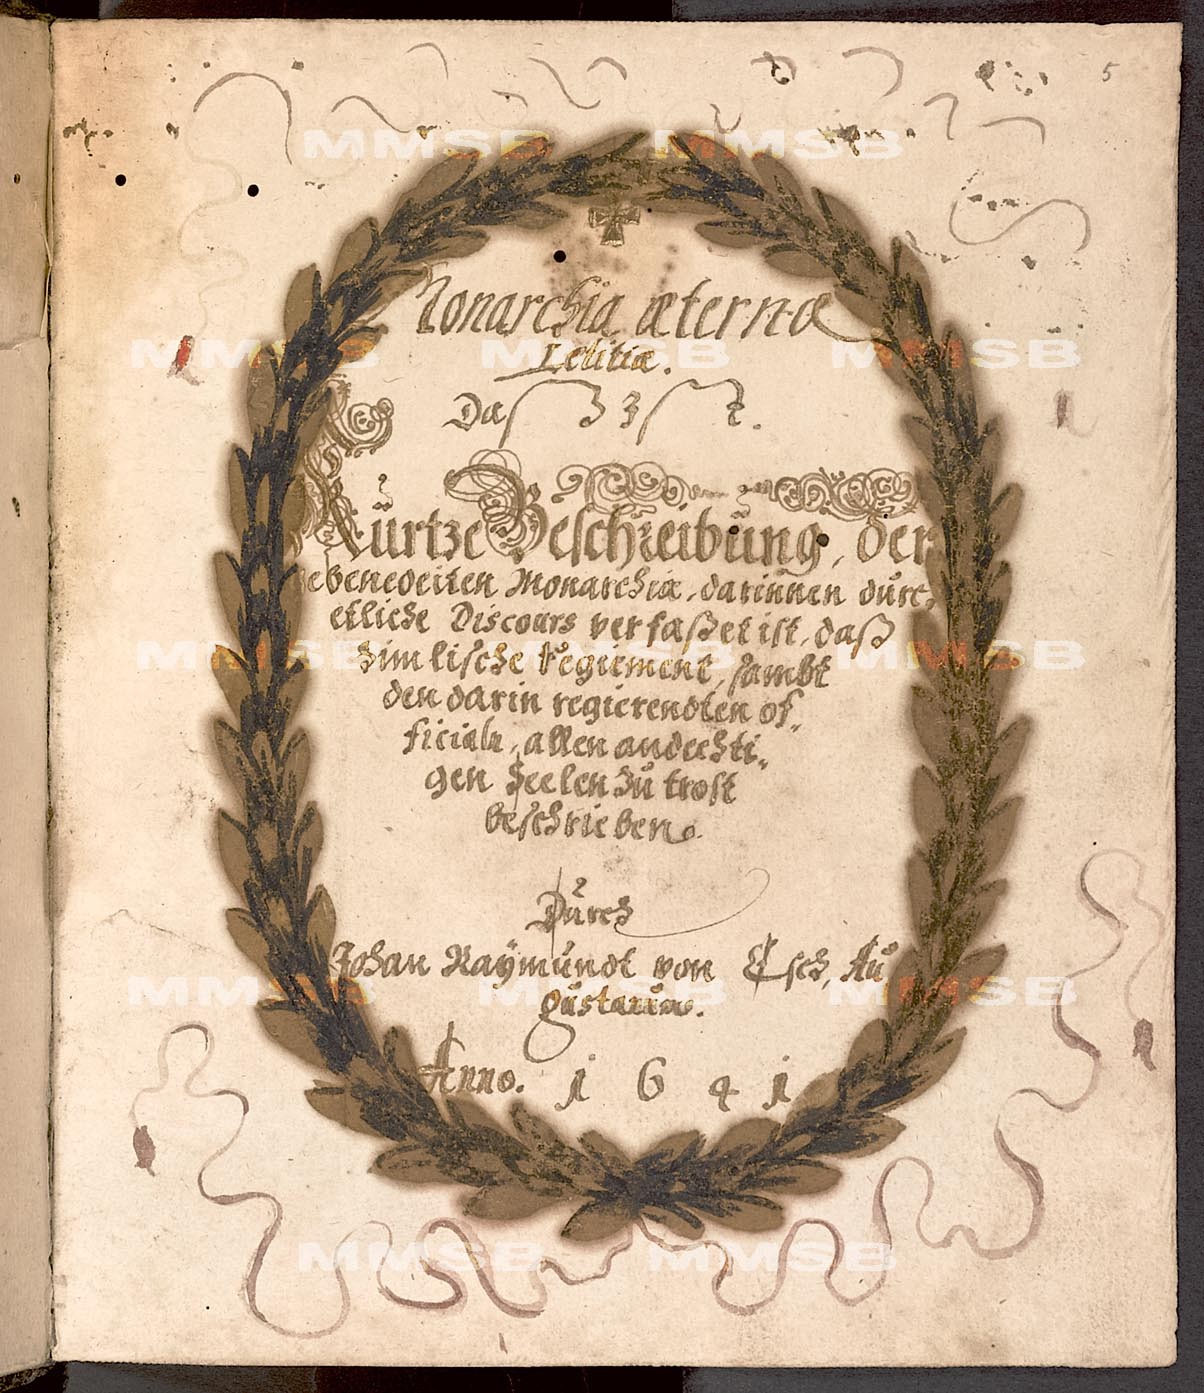 Johann Raymund von Esch: Monarchia aeternae letitiae; Johann Raymund von Esch: Monarchia aeternae tristitiae